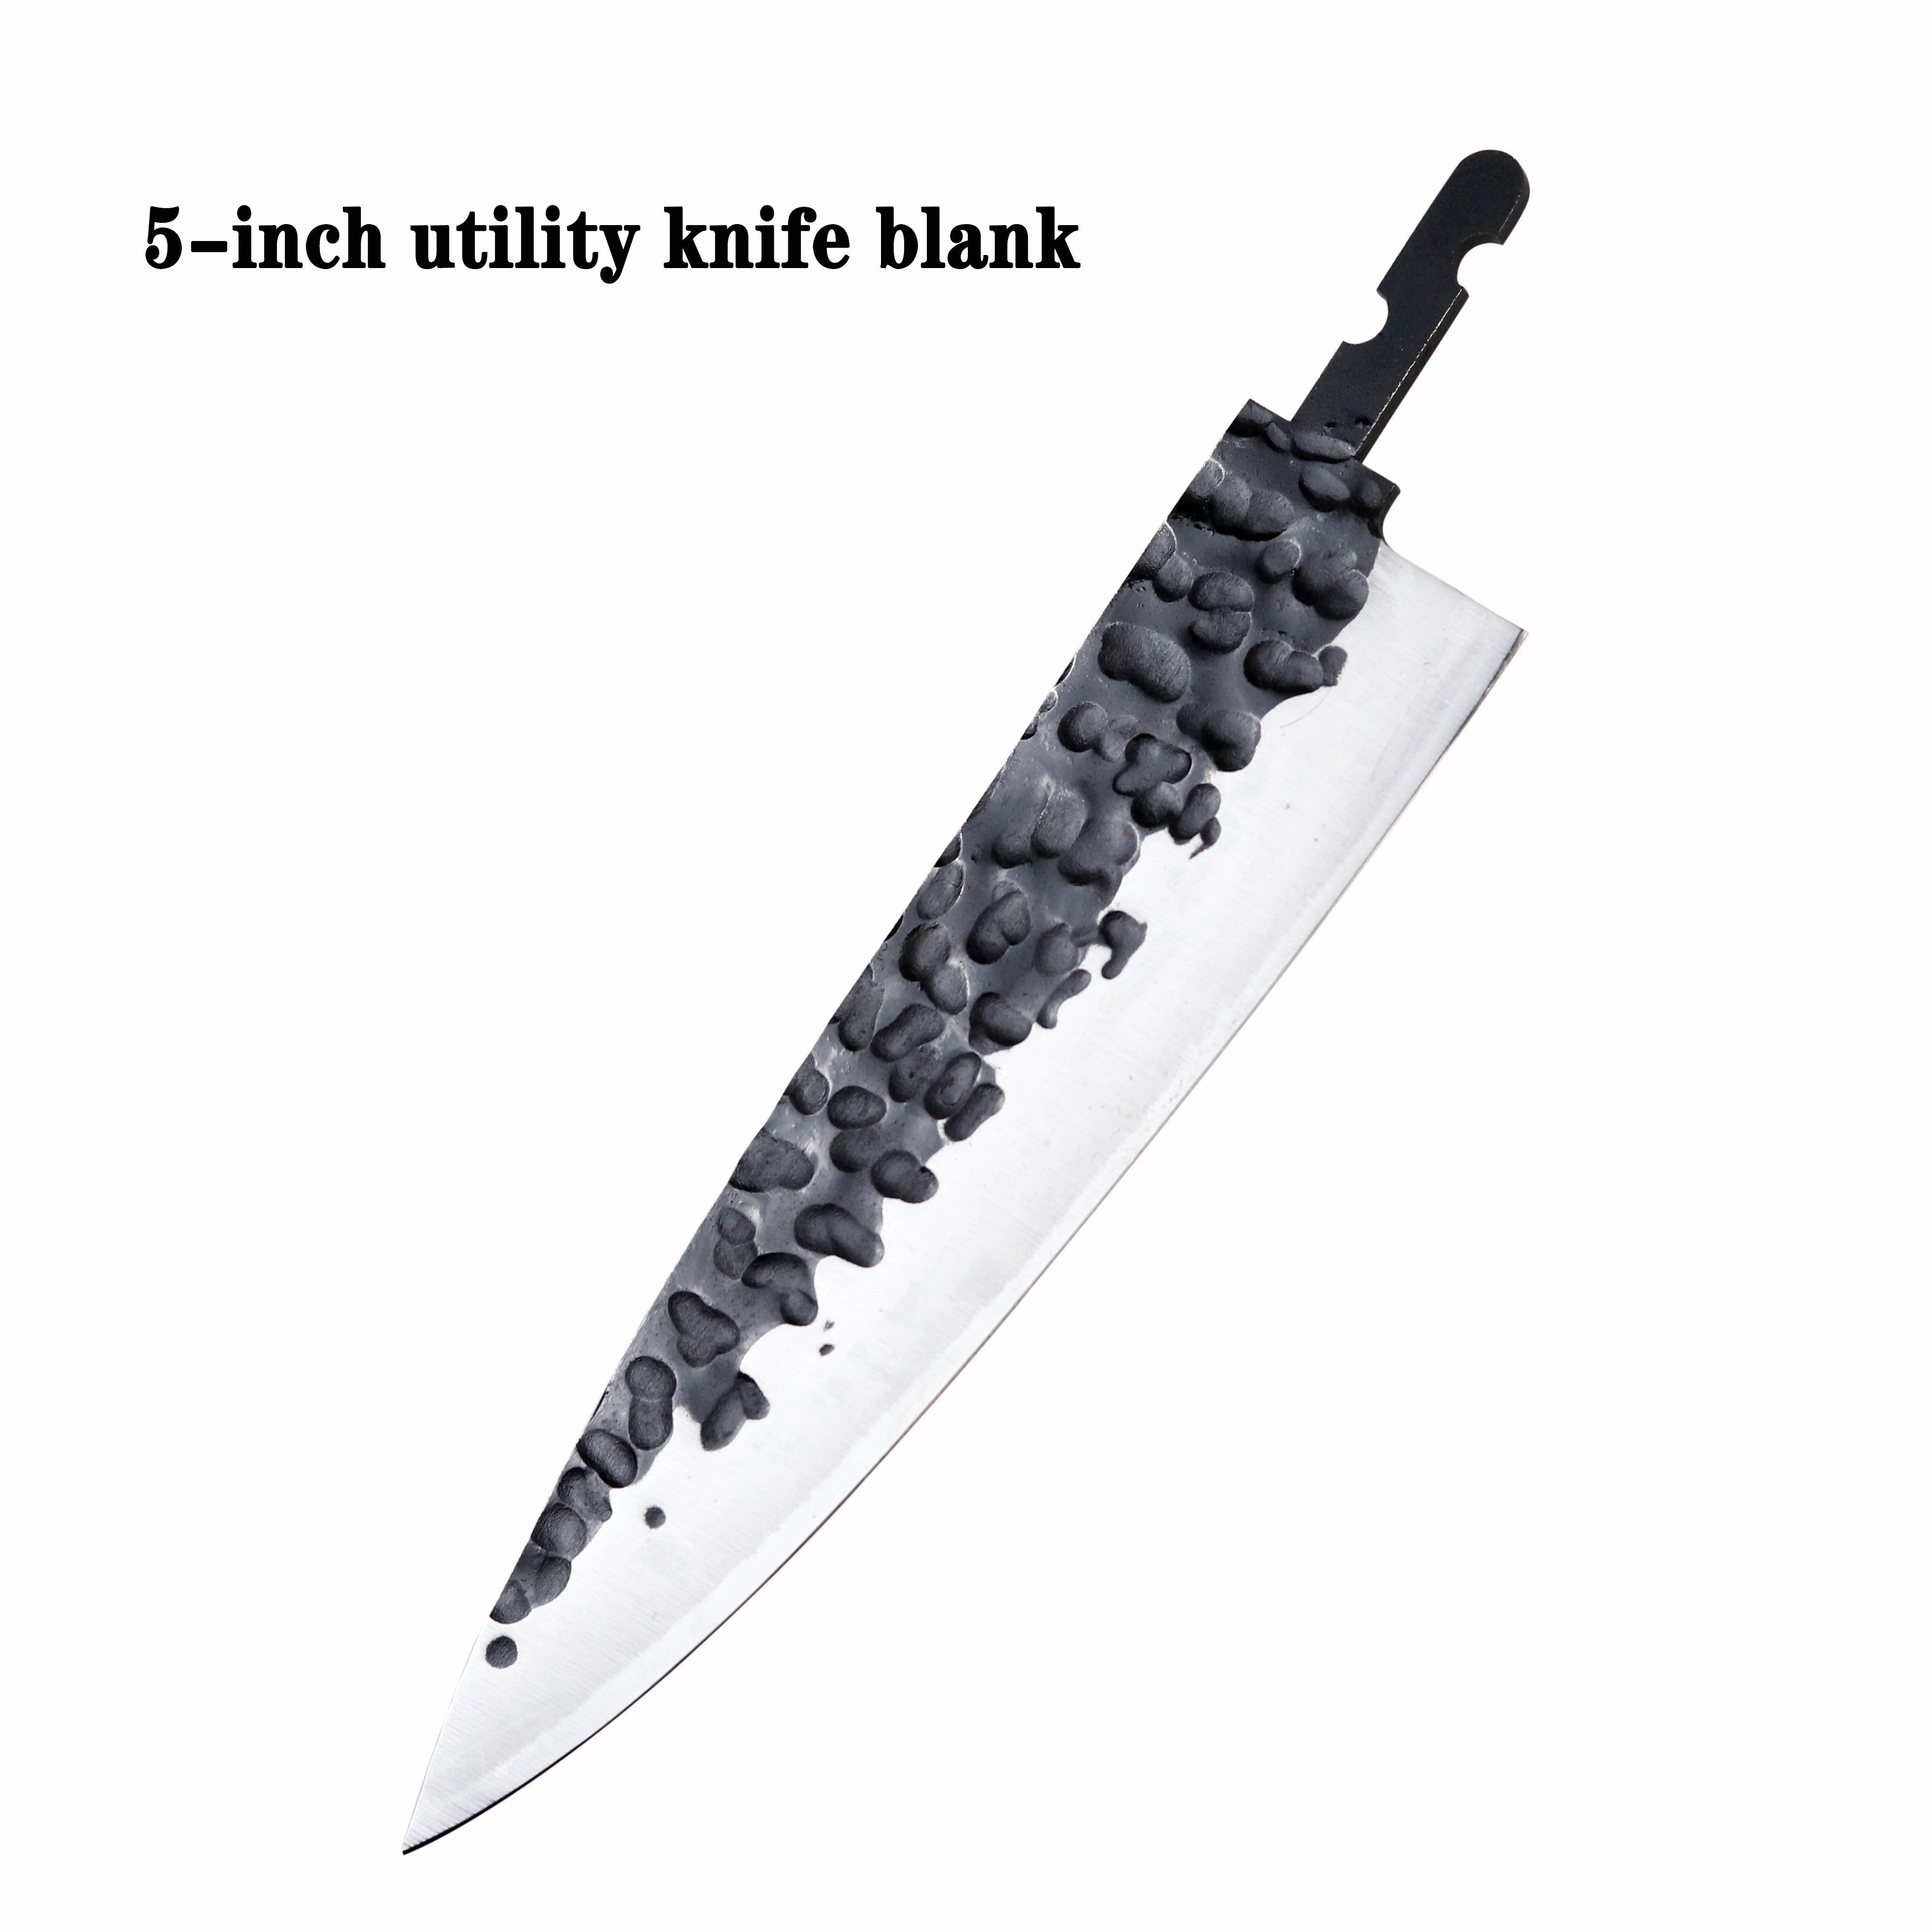 Veľké dávky DIY ručne kované profesionálne kuchynský nôž ocele VG10 core kuchársky nôž 6 palcový utility nôž prázdne 2